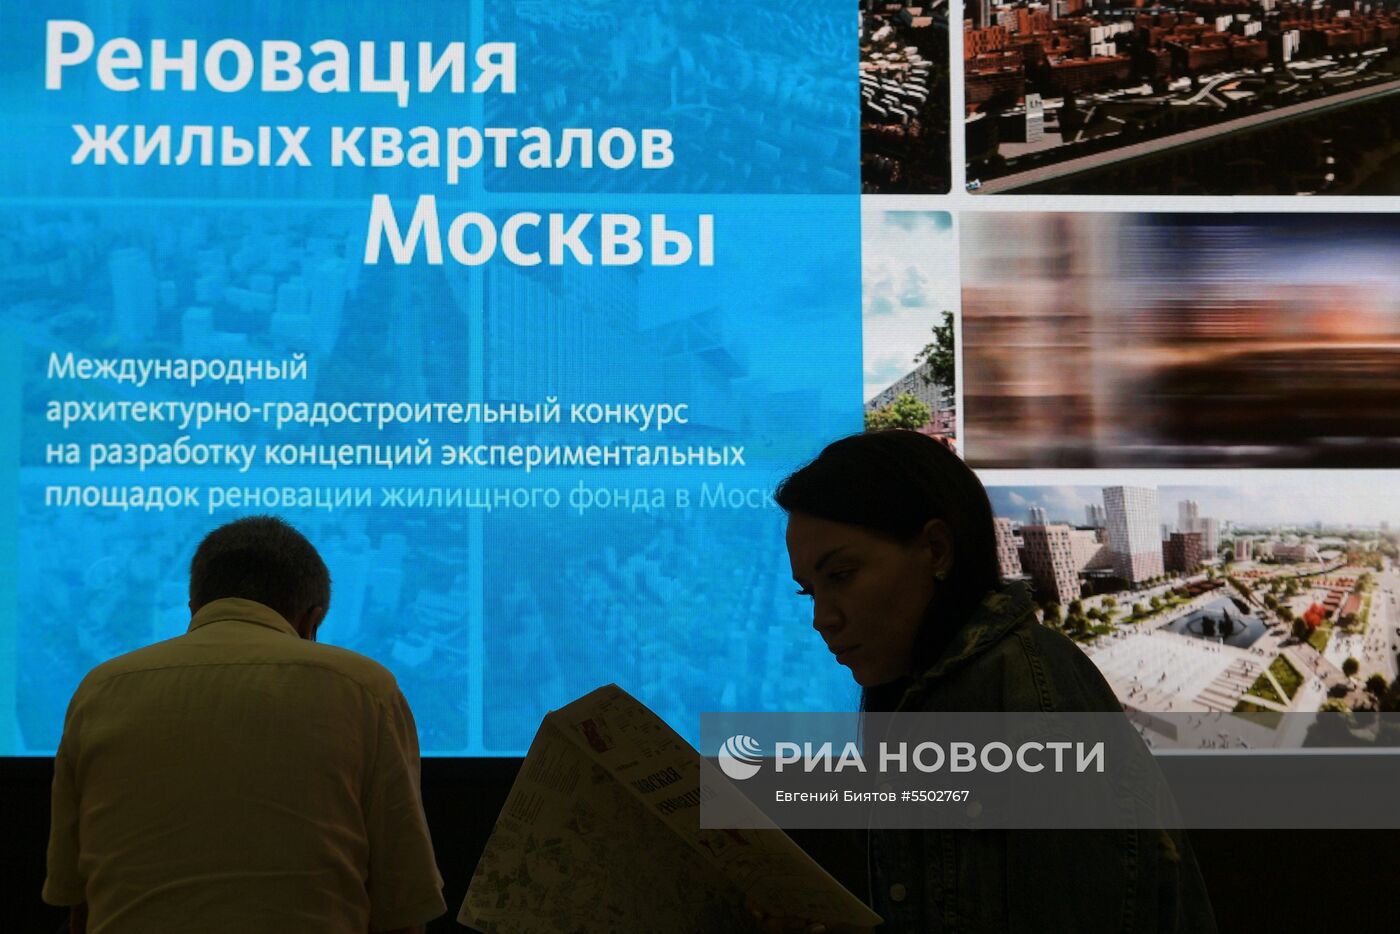 Международная выставка архитектуры и дизайна "Арх Москва" 